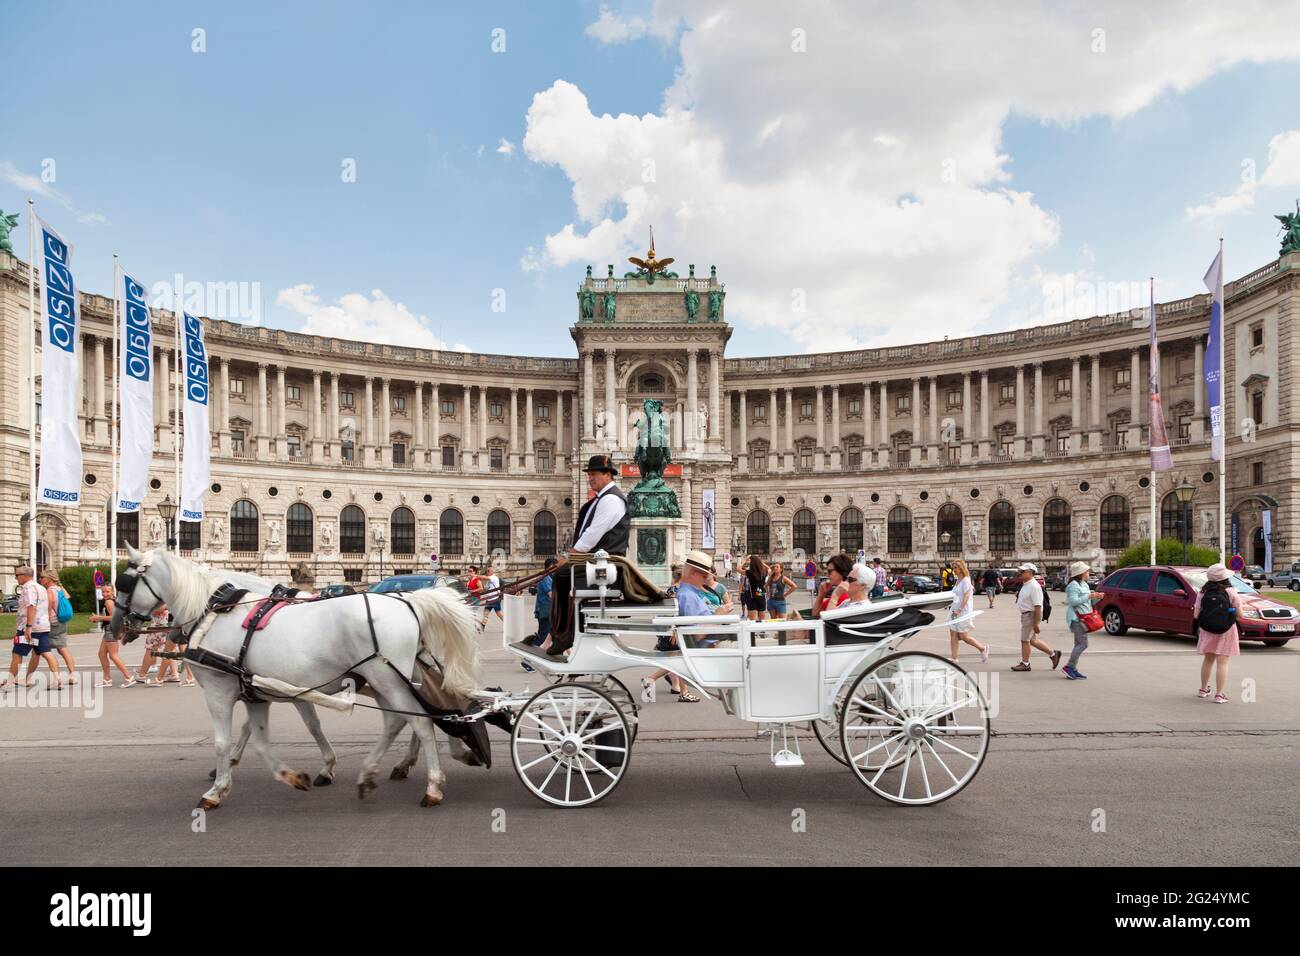 Vienne, Autriche - juin 17 2018 : passage en voiture devant la bibliothèque nationale autrichienne située dans l'aile Neue Burg de la Hofburg Banque D'Images